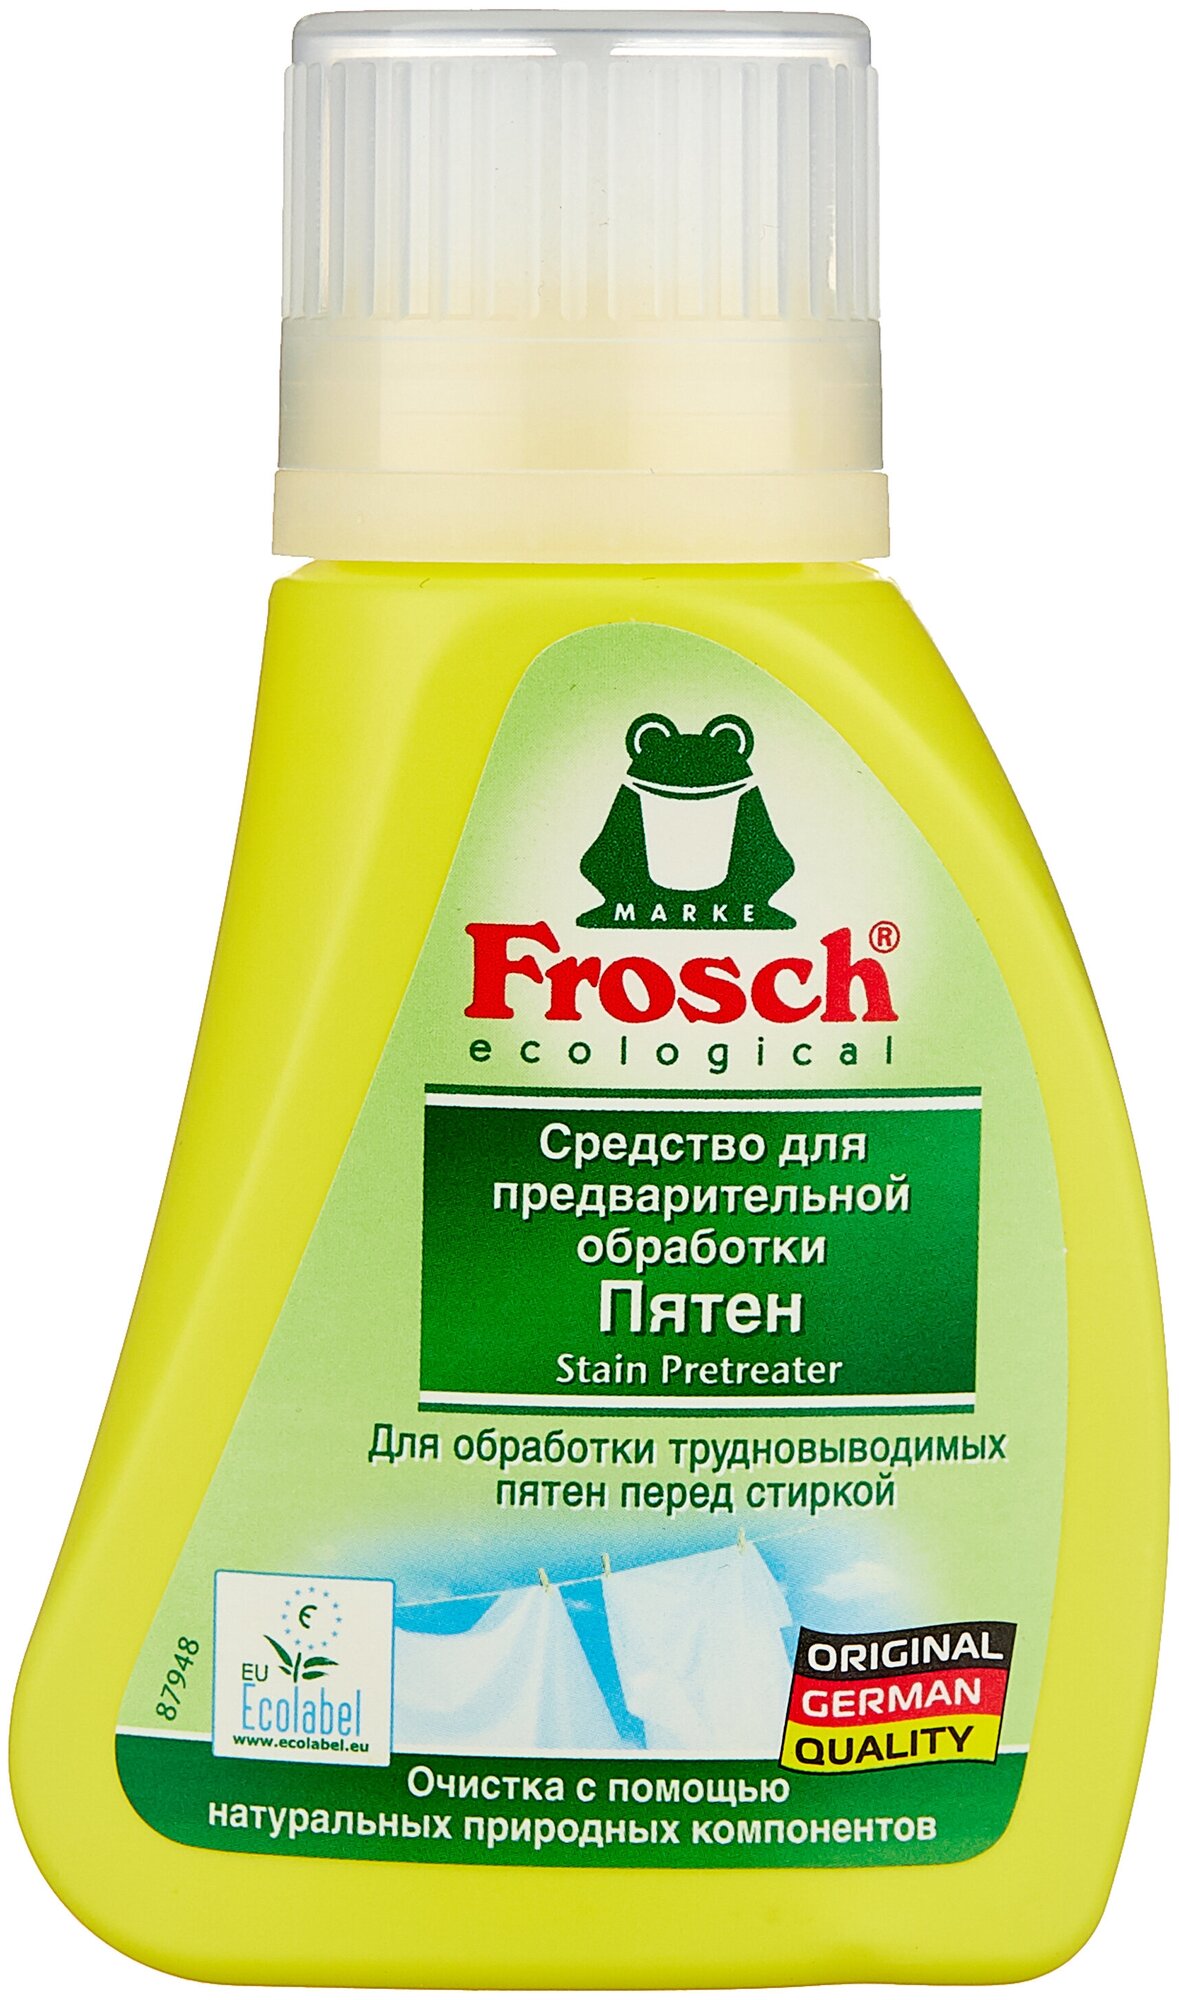 Frosch     75  